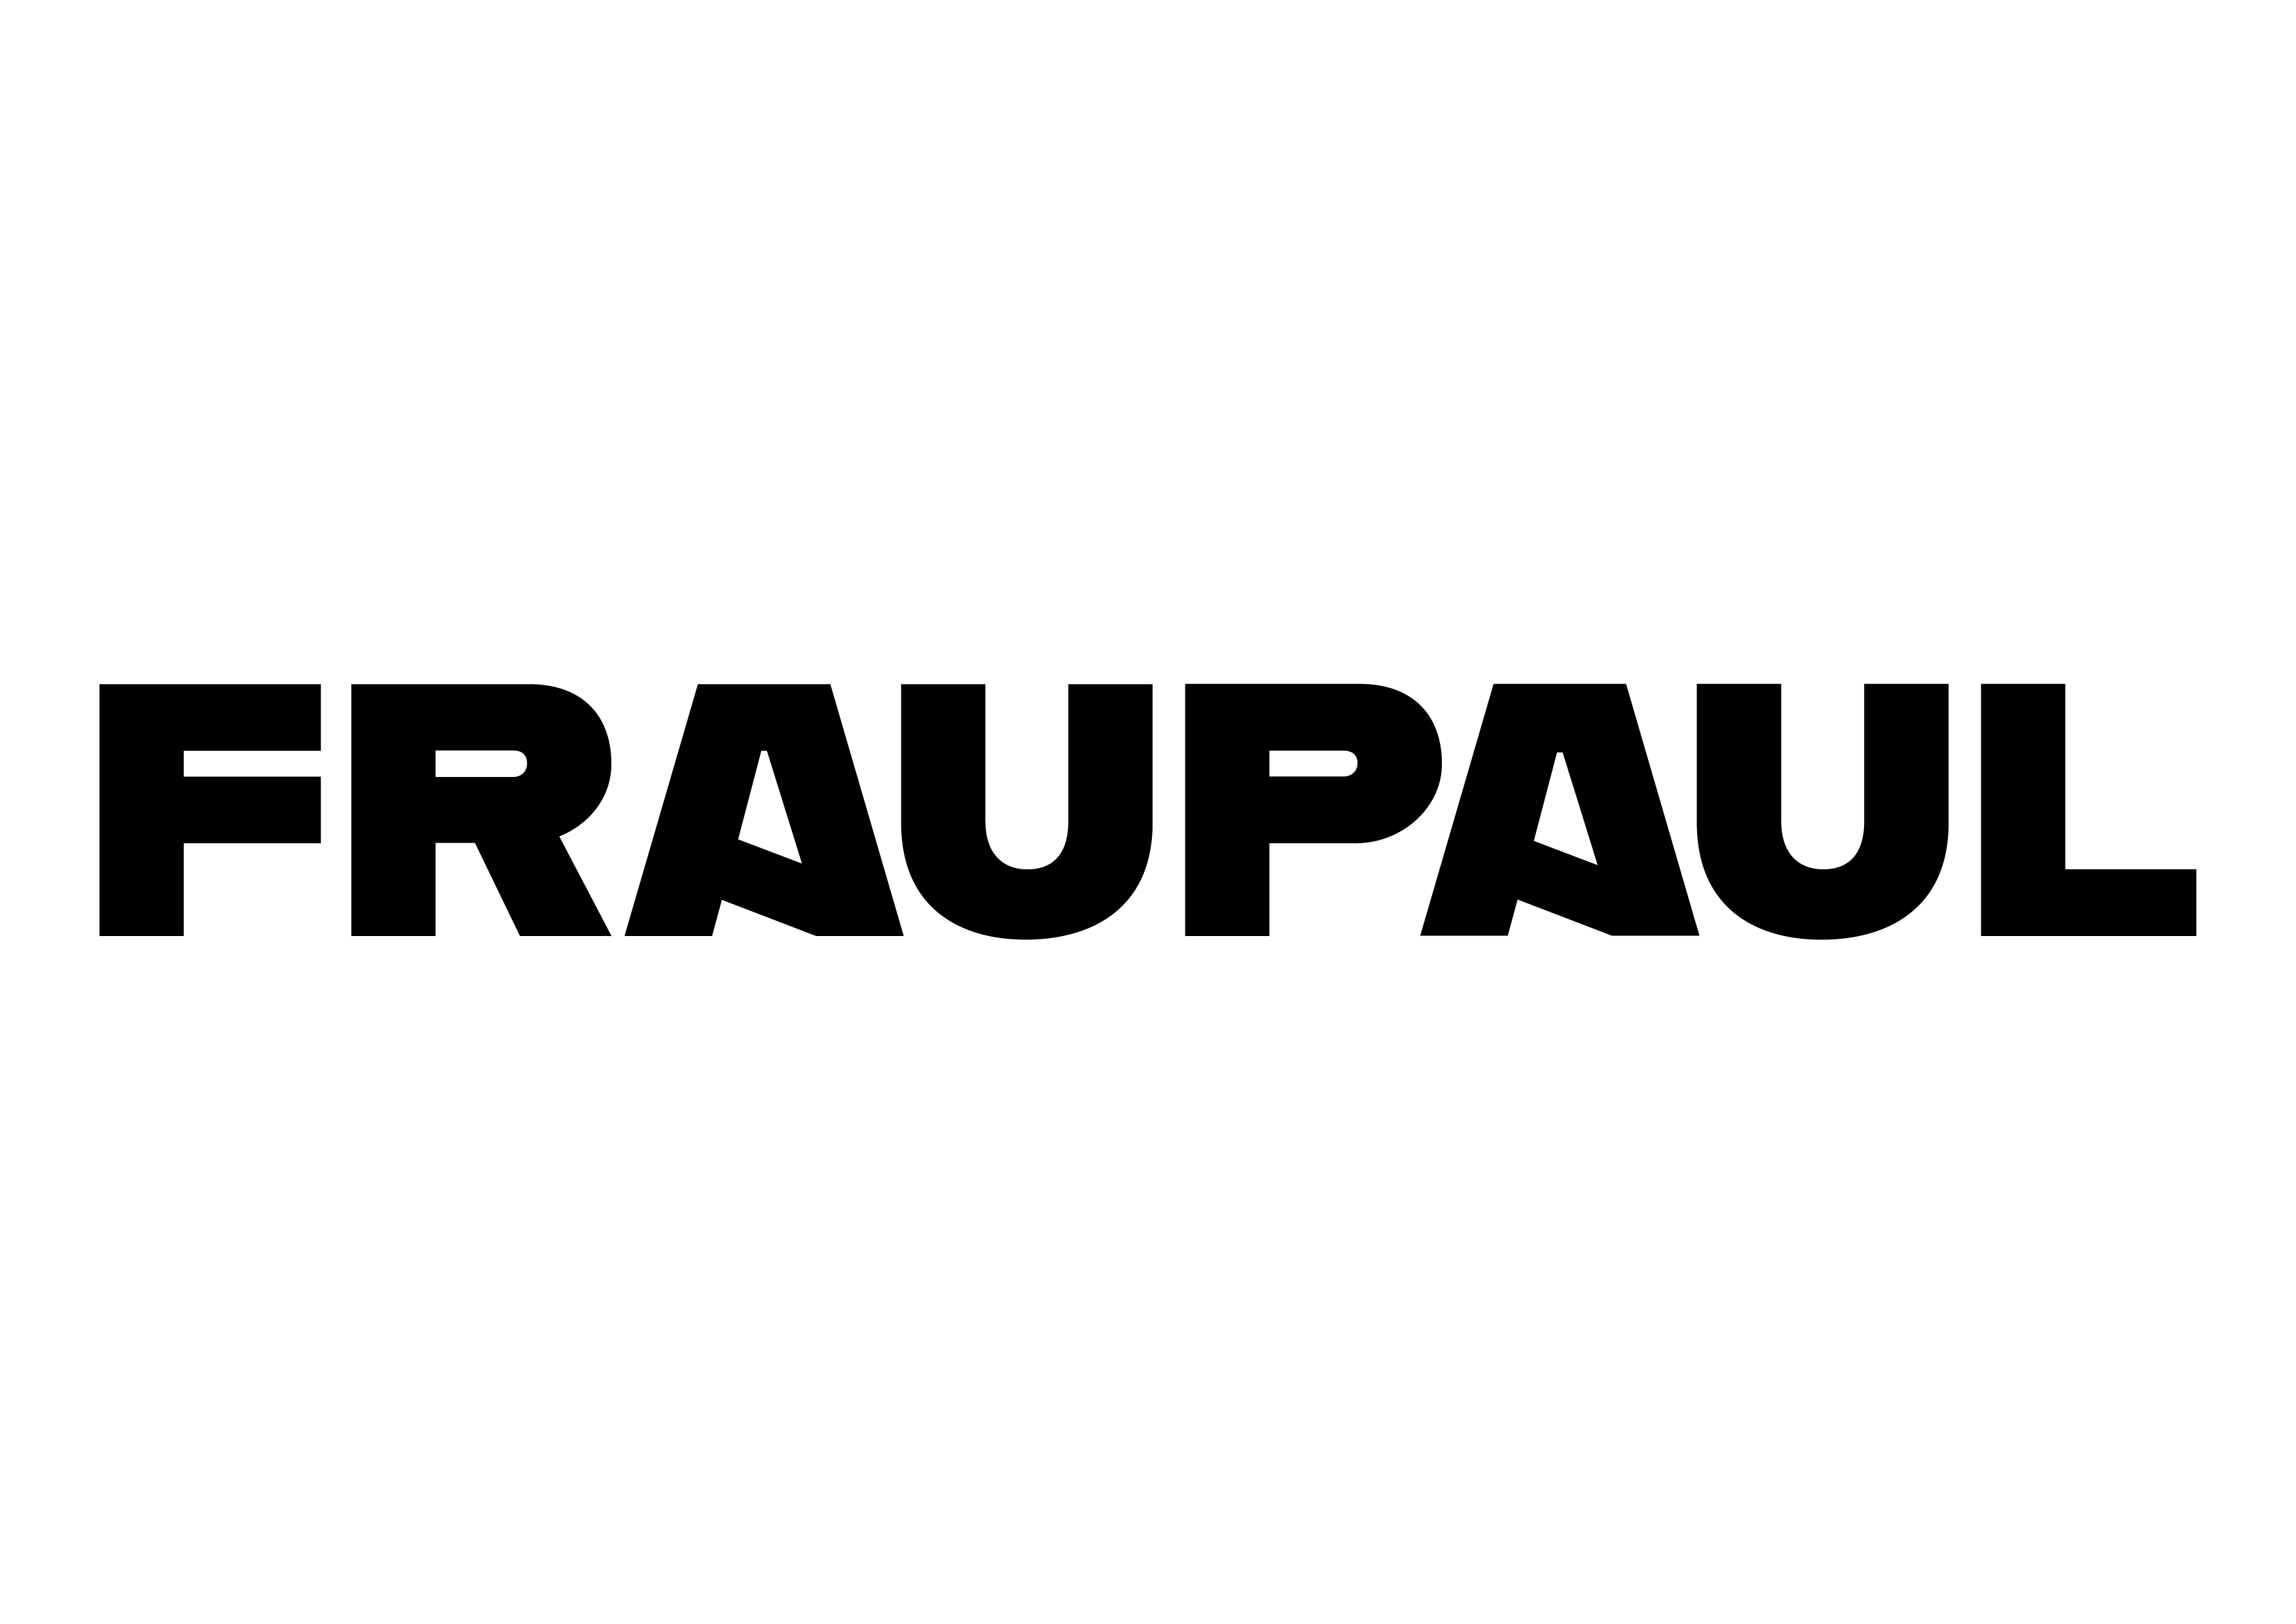 FRAUPAUL Logo black 300ppi